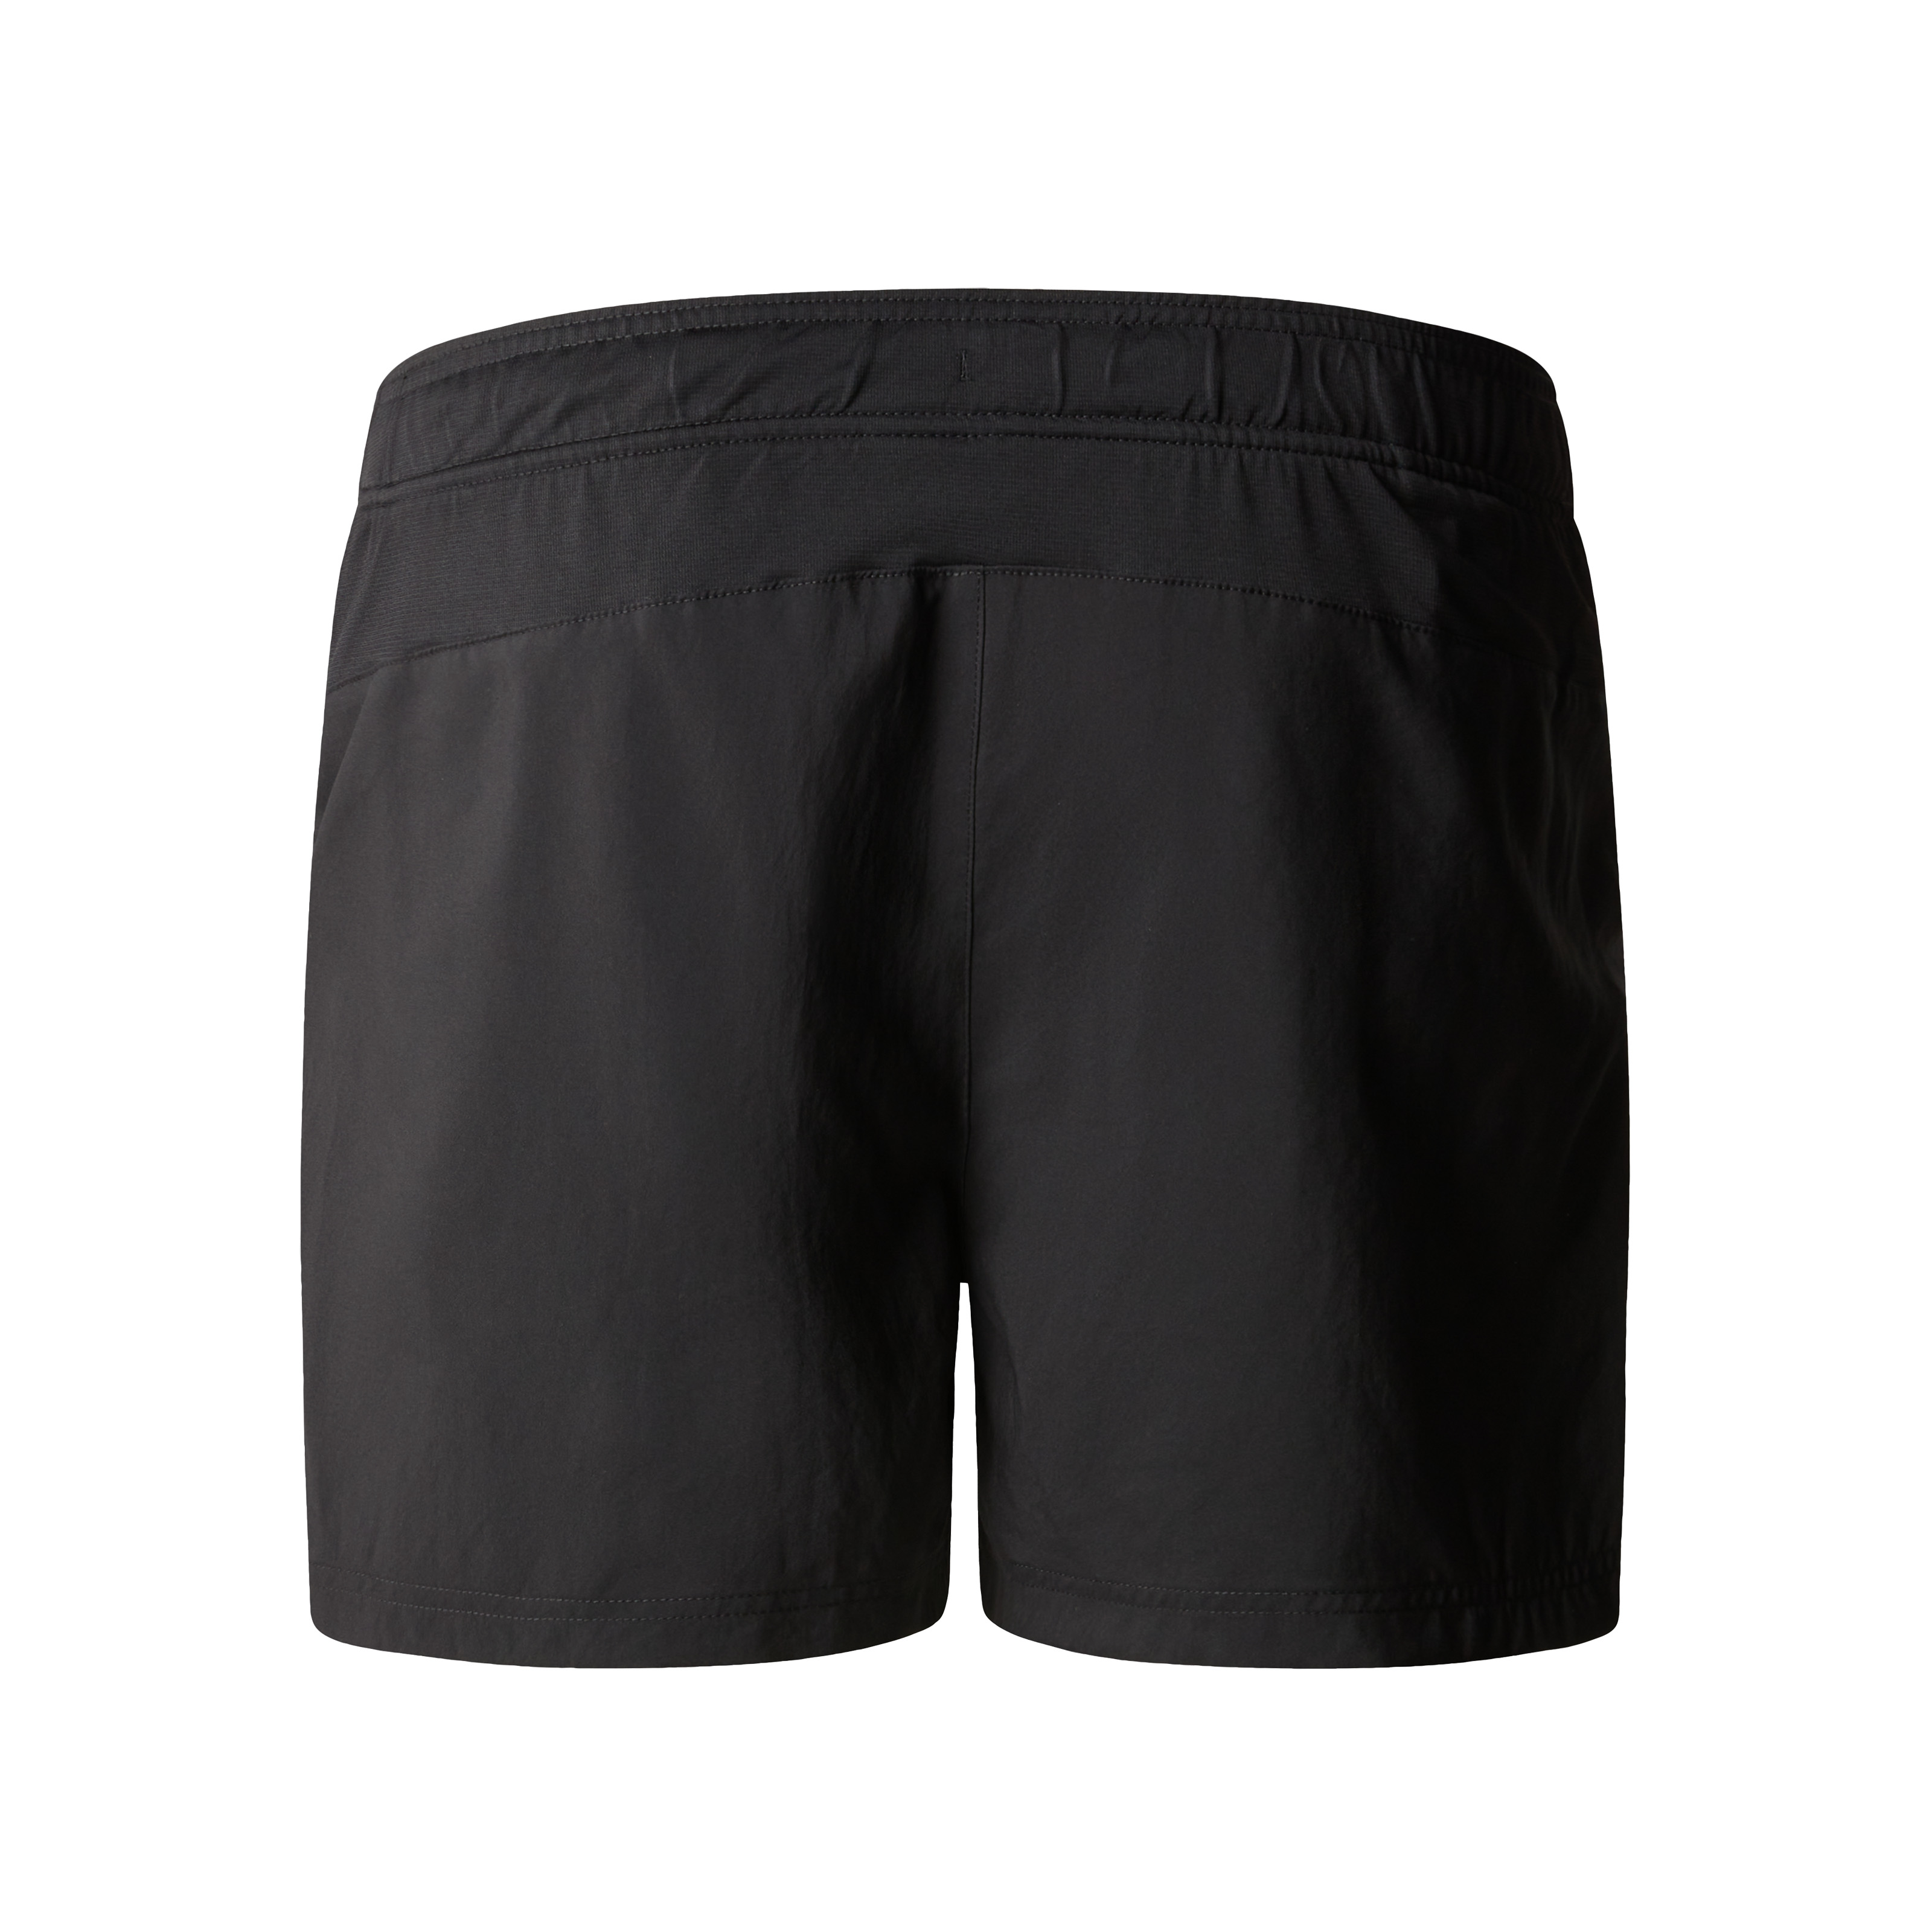 The North Face Mens 24/7 5 Shorts